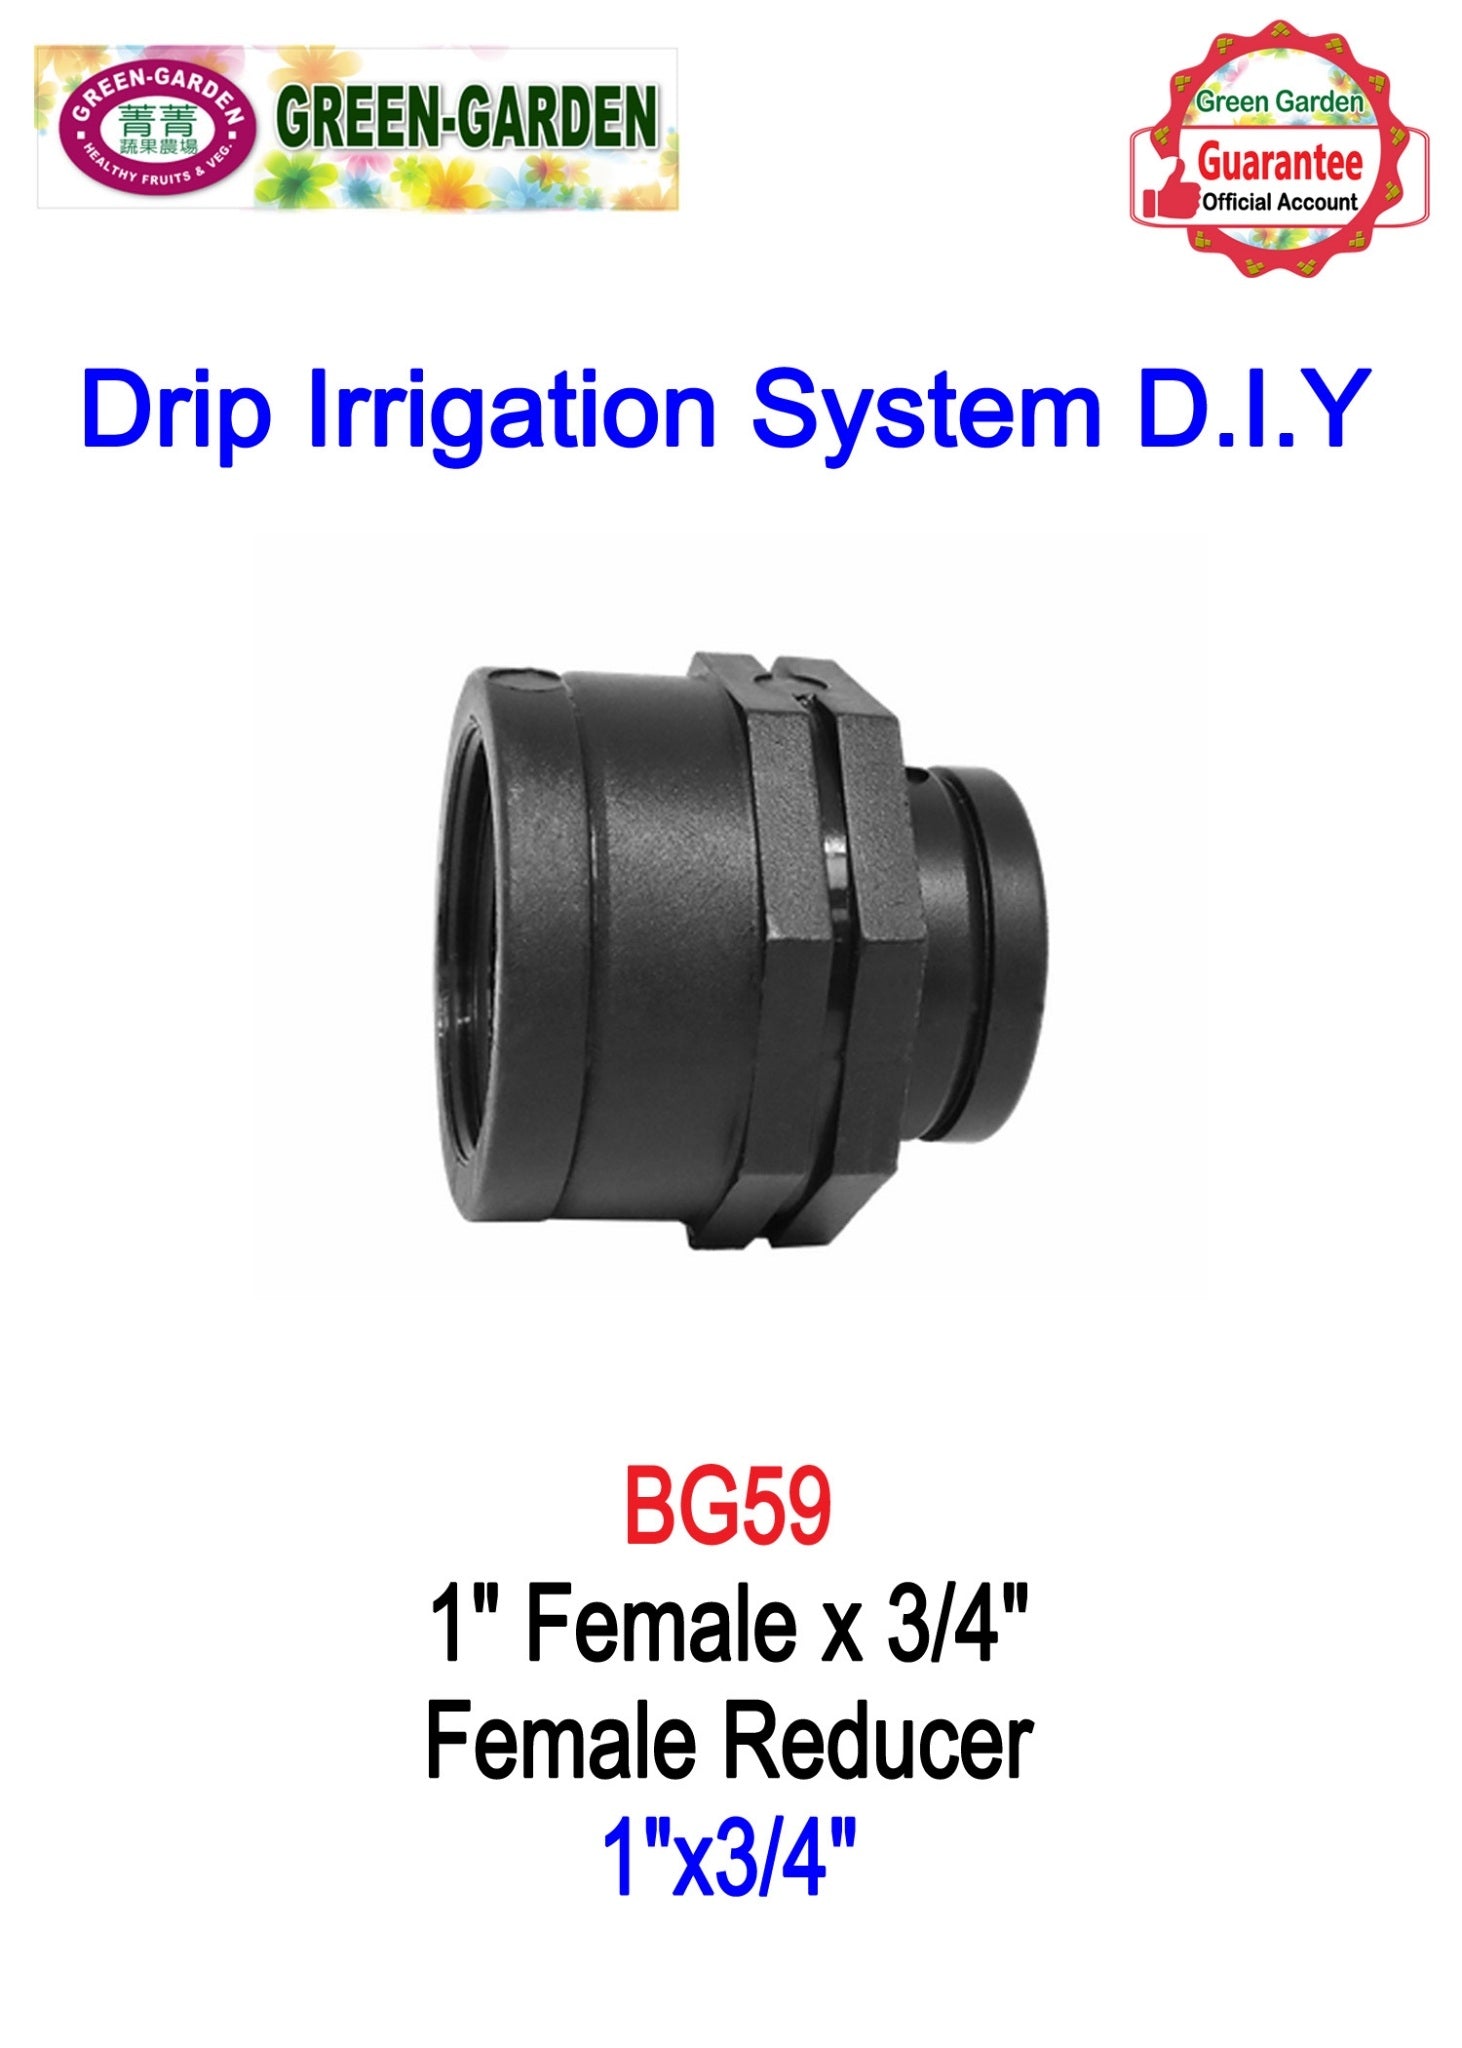 Drip Irrigation System - 1"female x 3/4" female reducer BG59